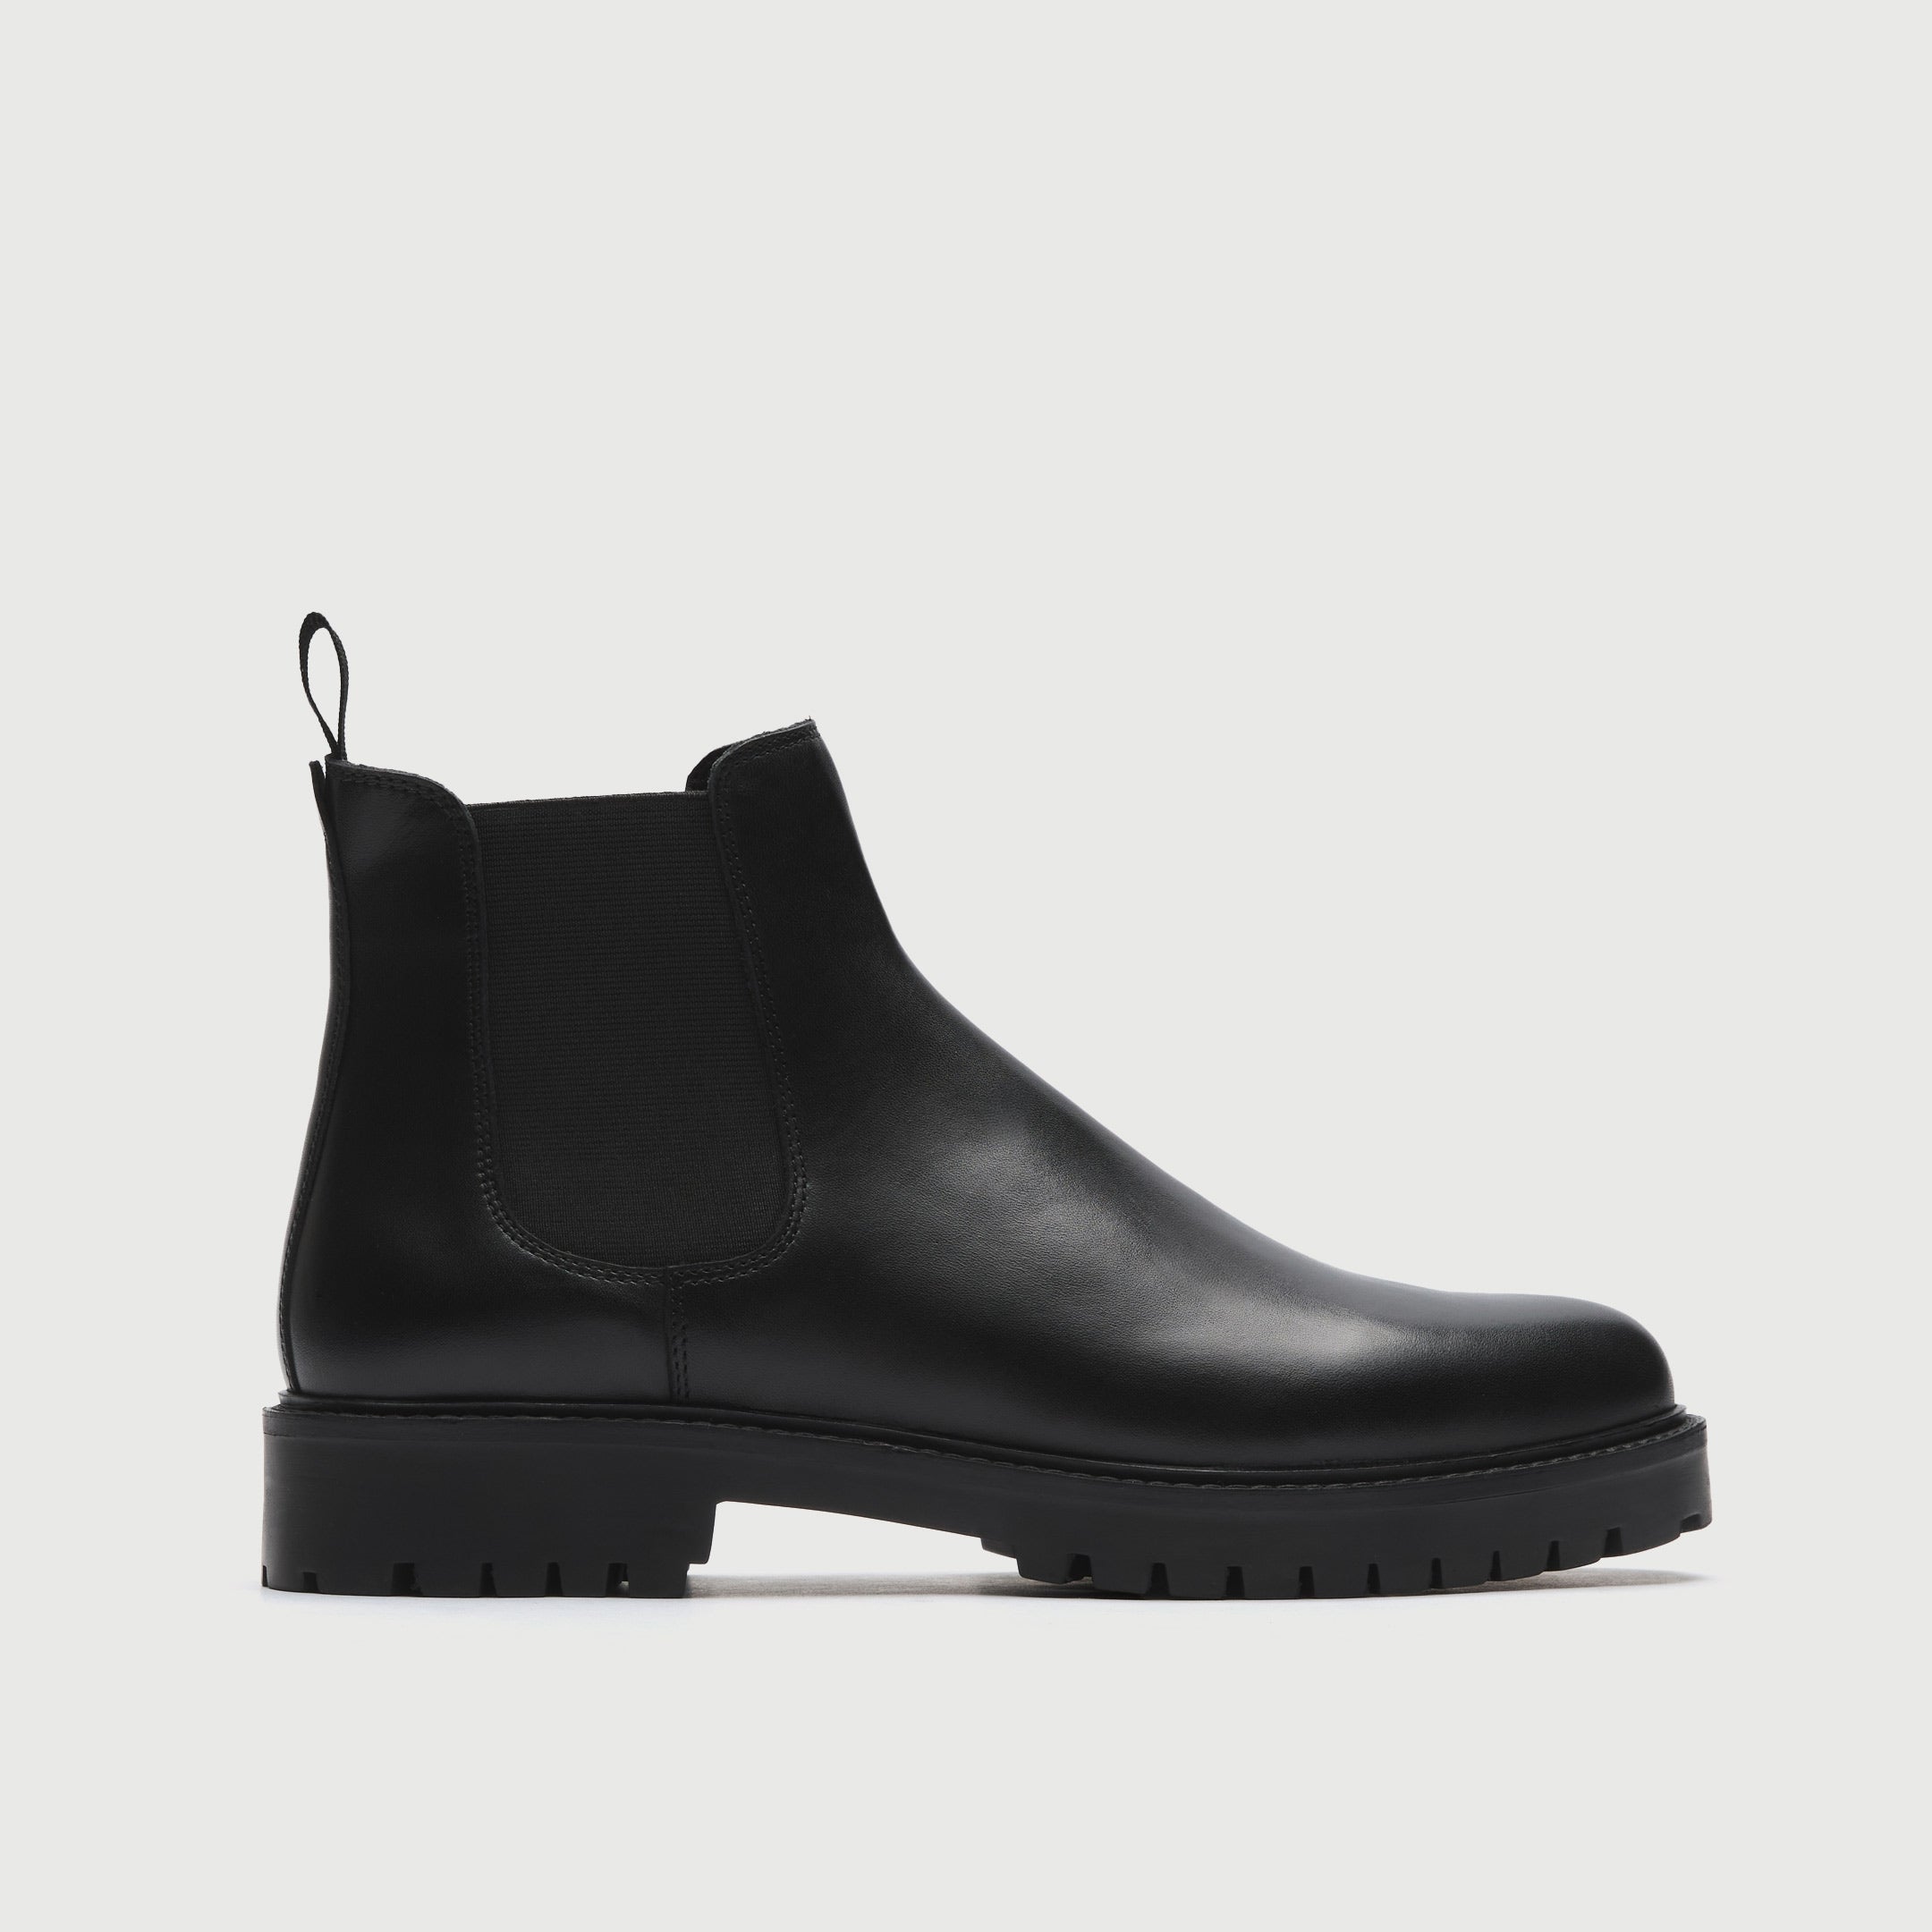 WALK London Men's Sean Chelsea Boot in Black Leather